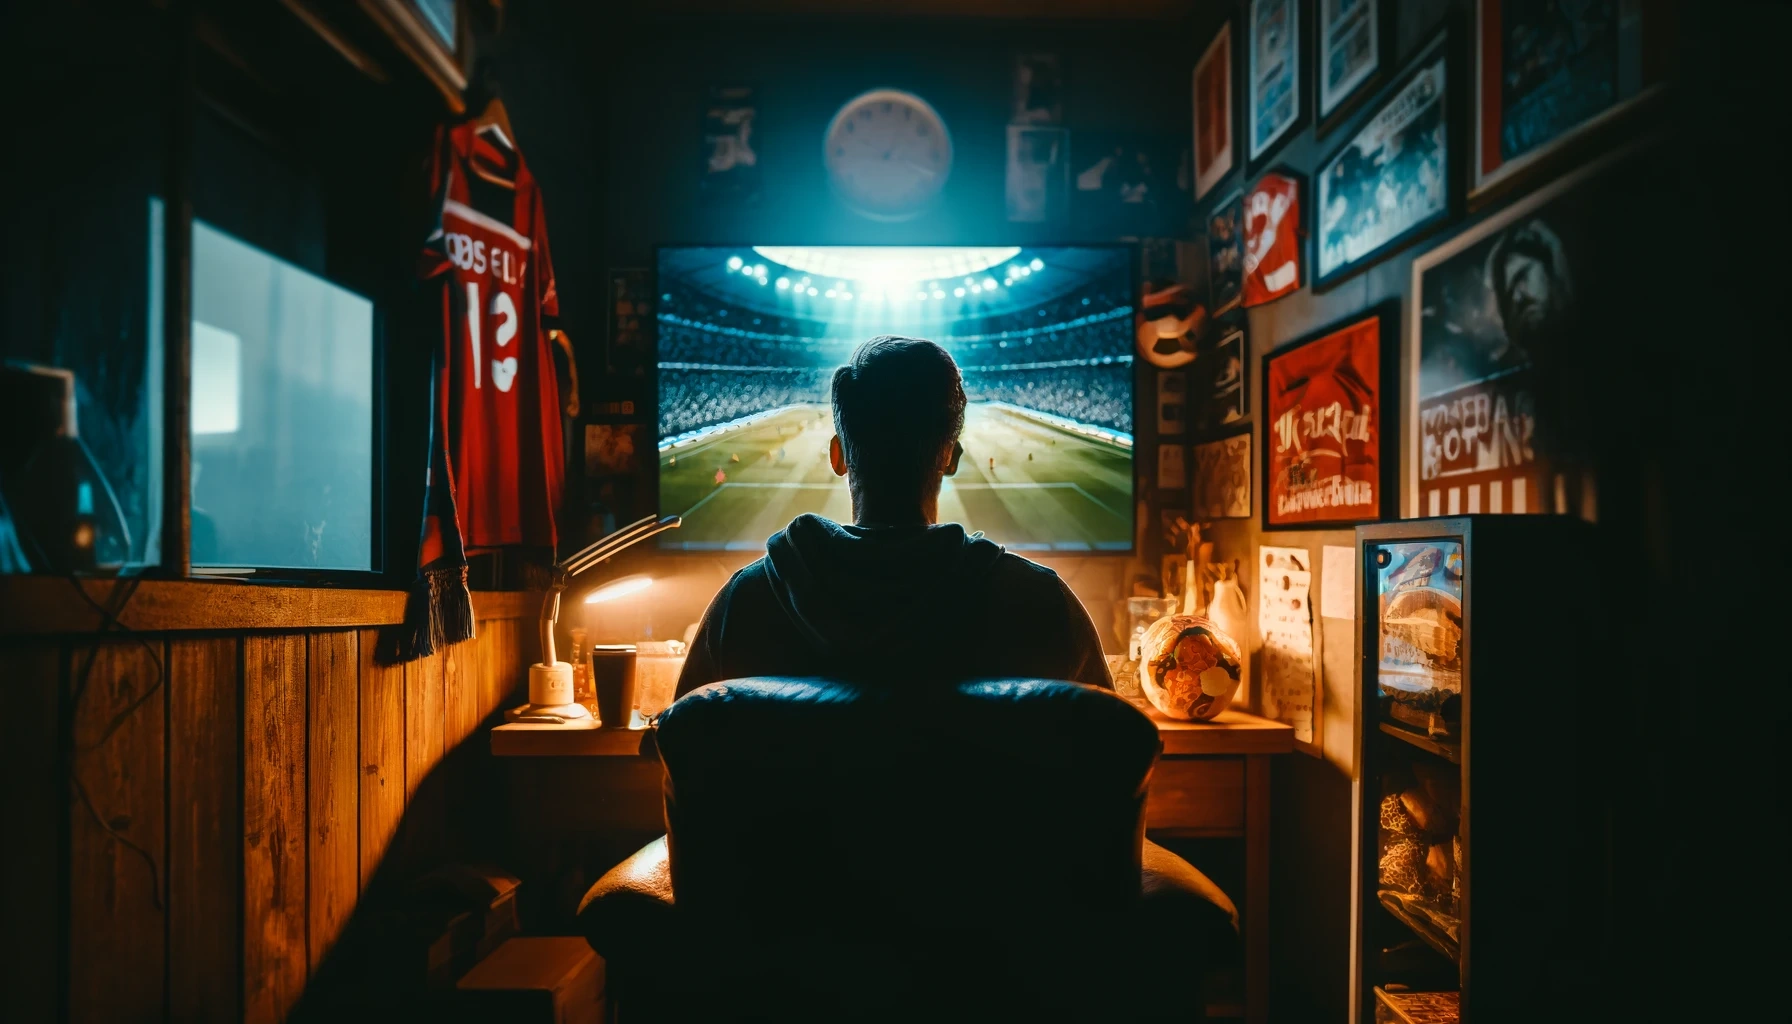 Μάθετε πώς να παρακολουθείτε εύκολα ποδόσφαιρο online στο smartphone